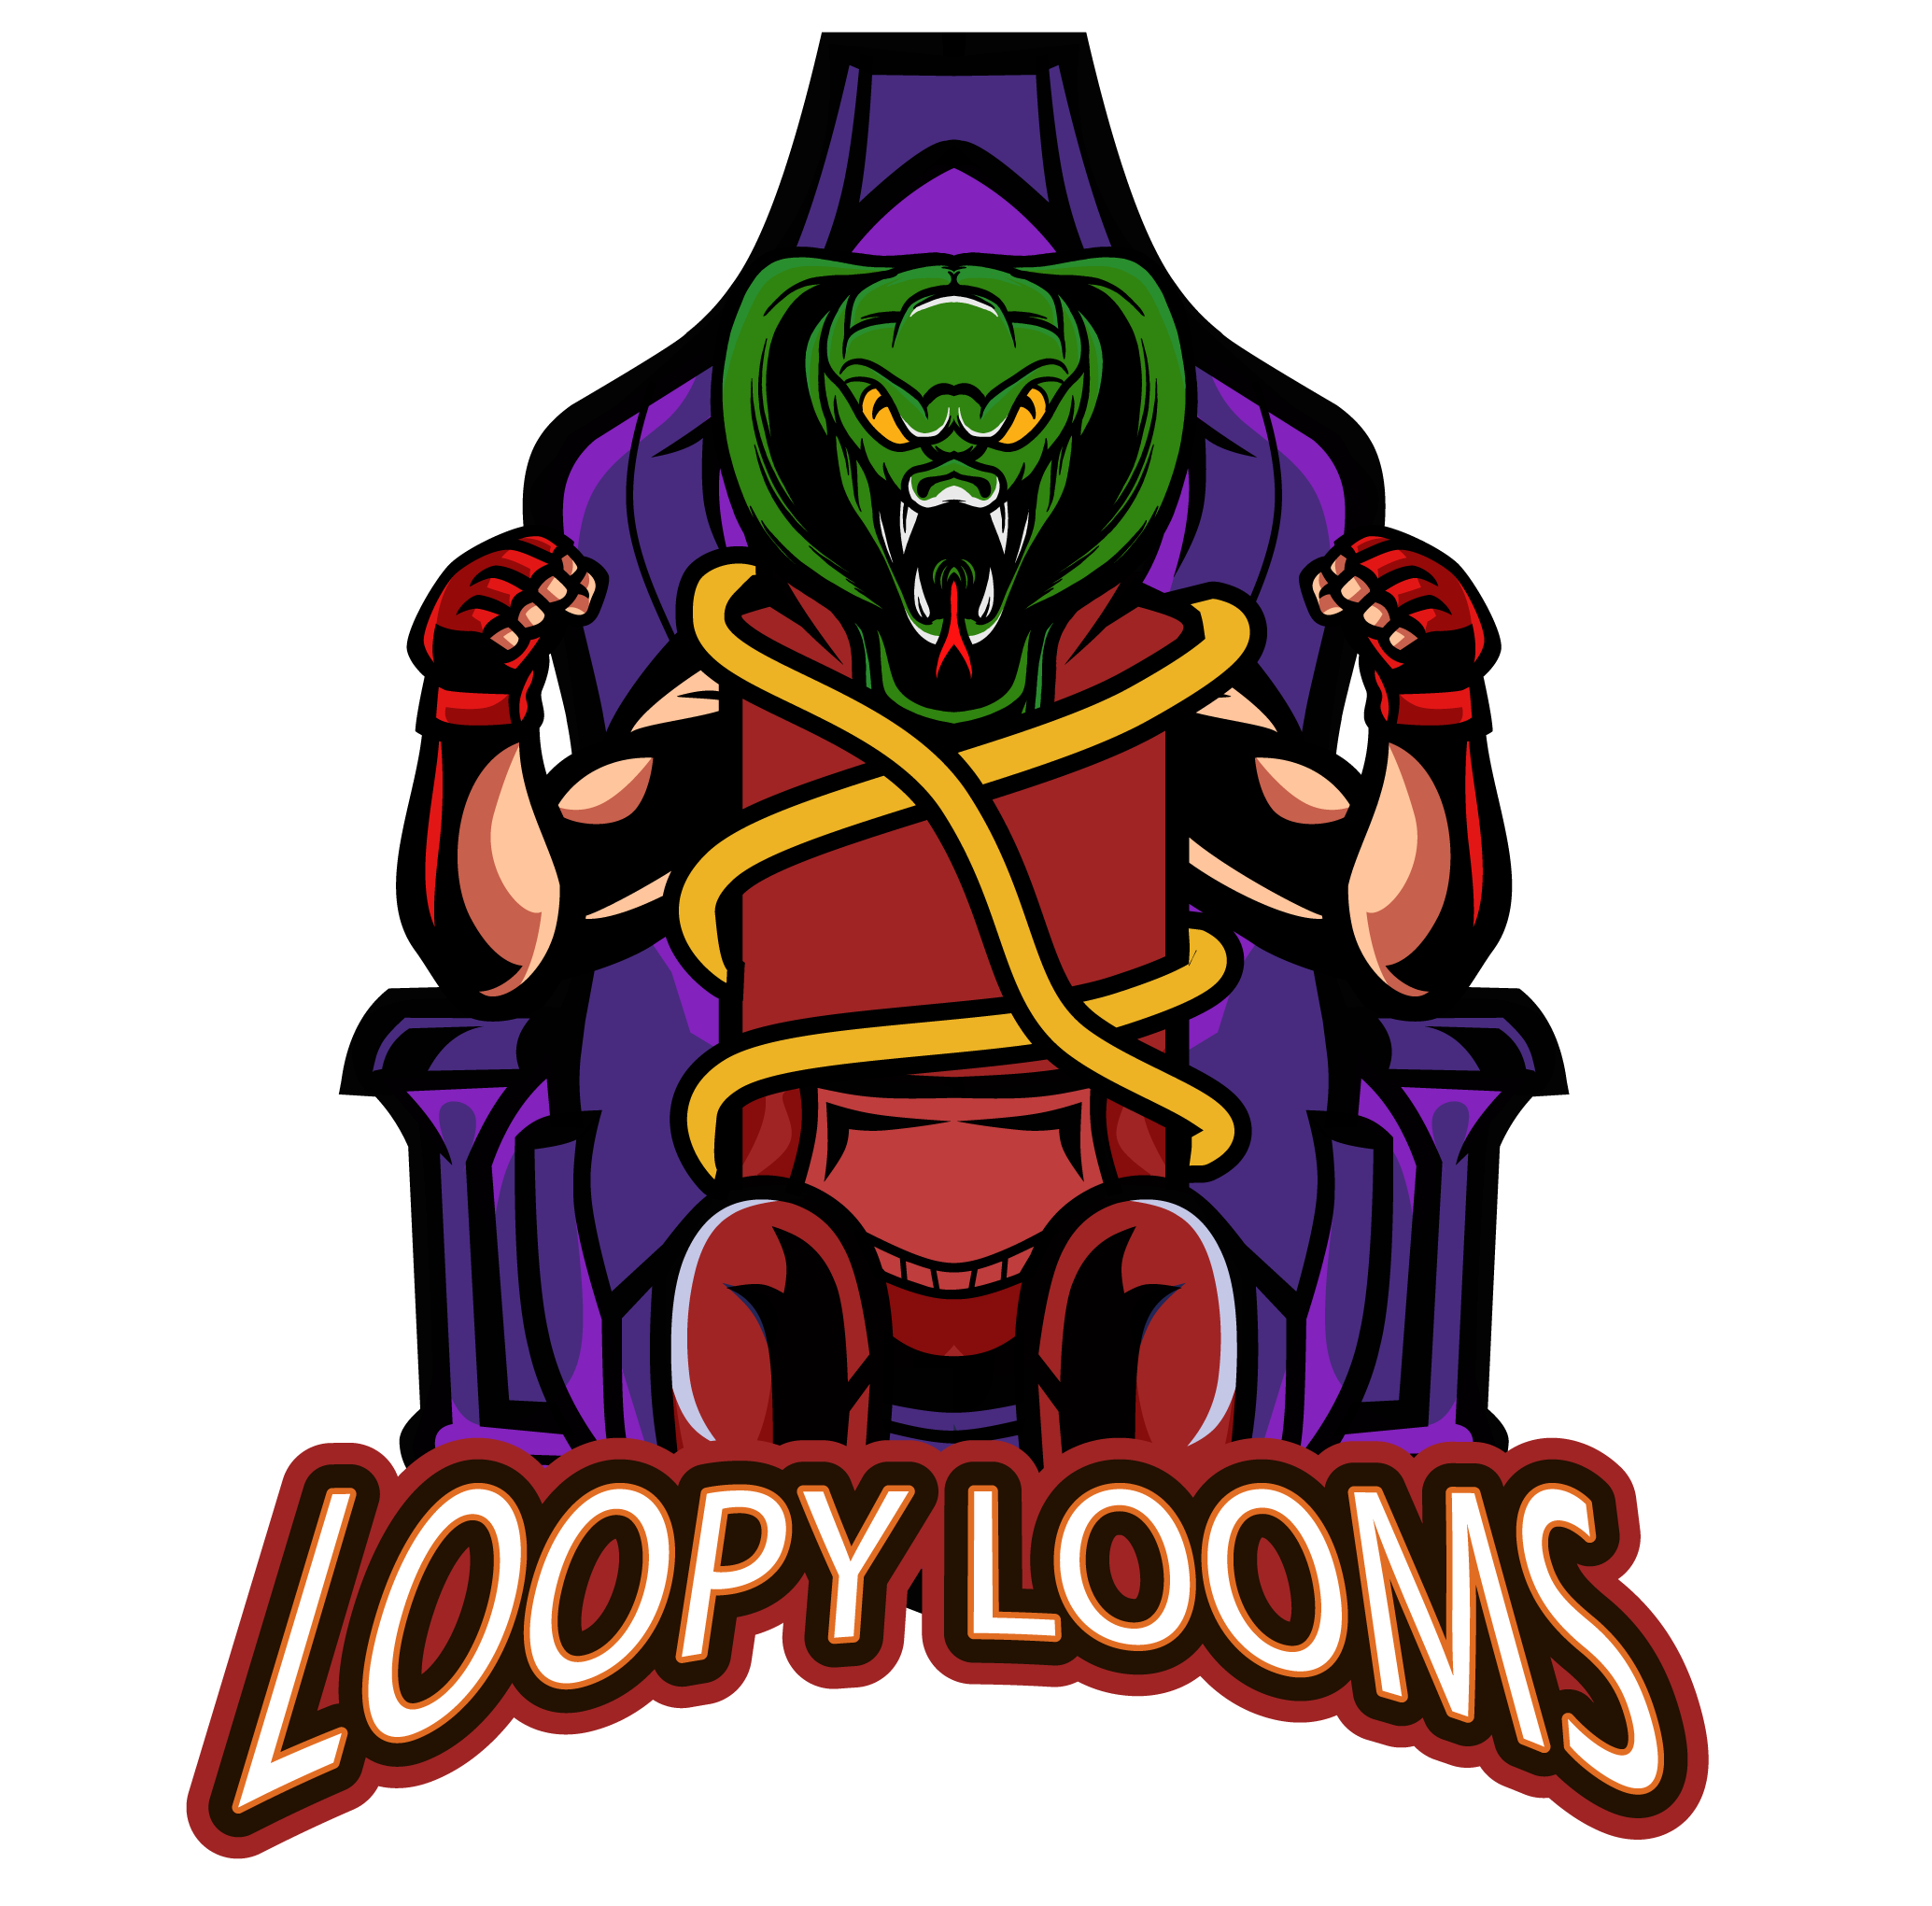 Loopy Looms